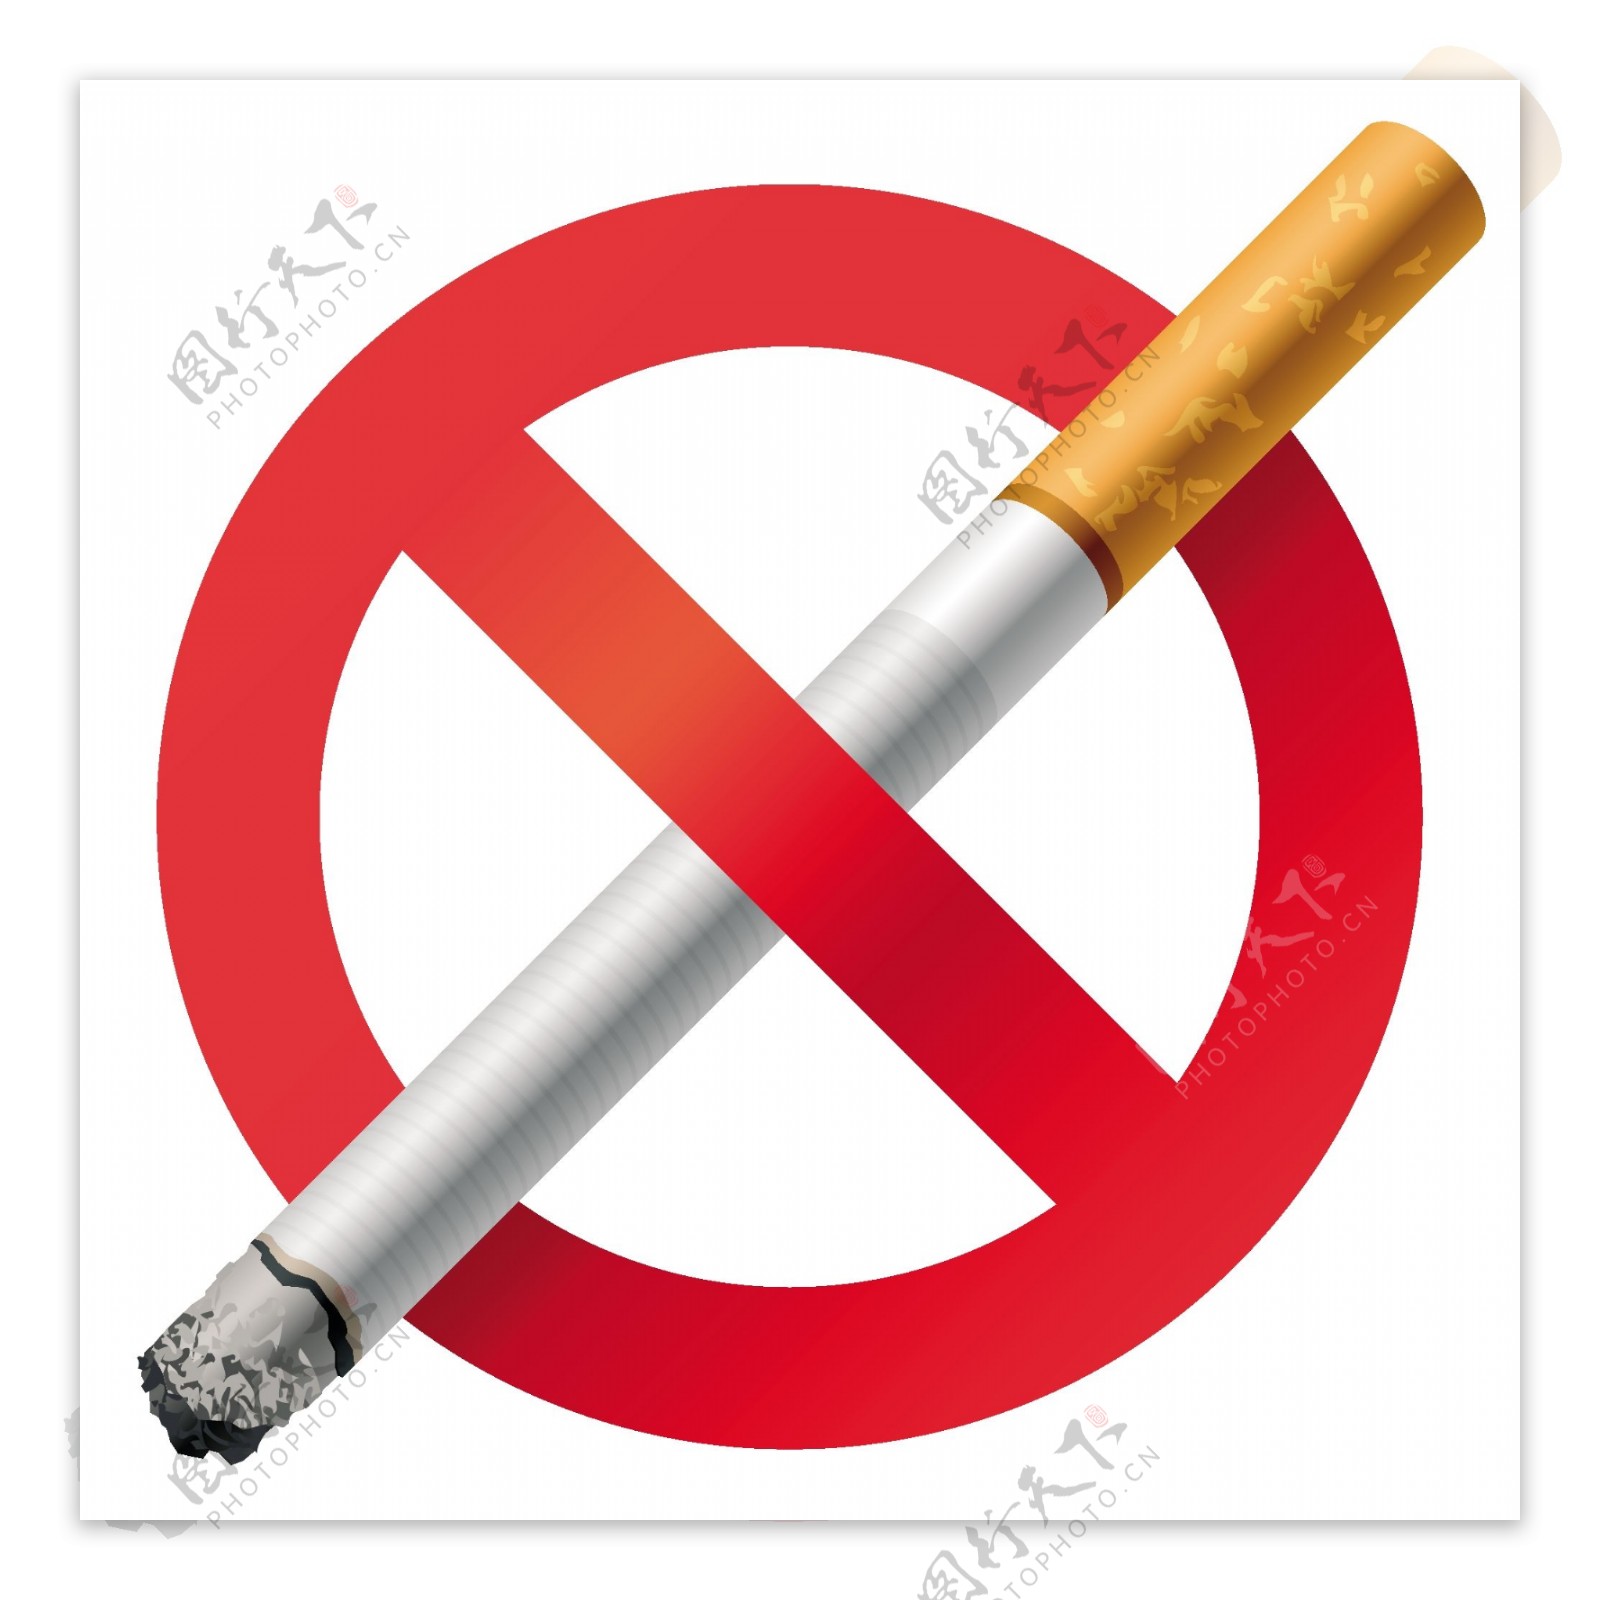 禁止吸烟标志矢量素材